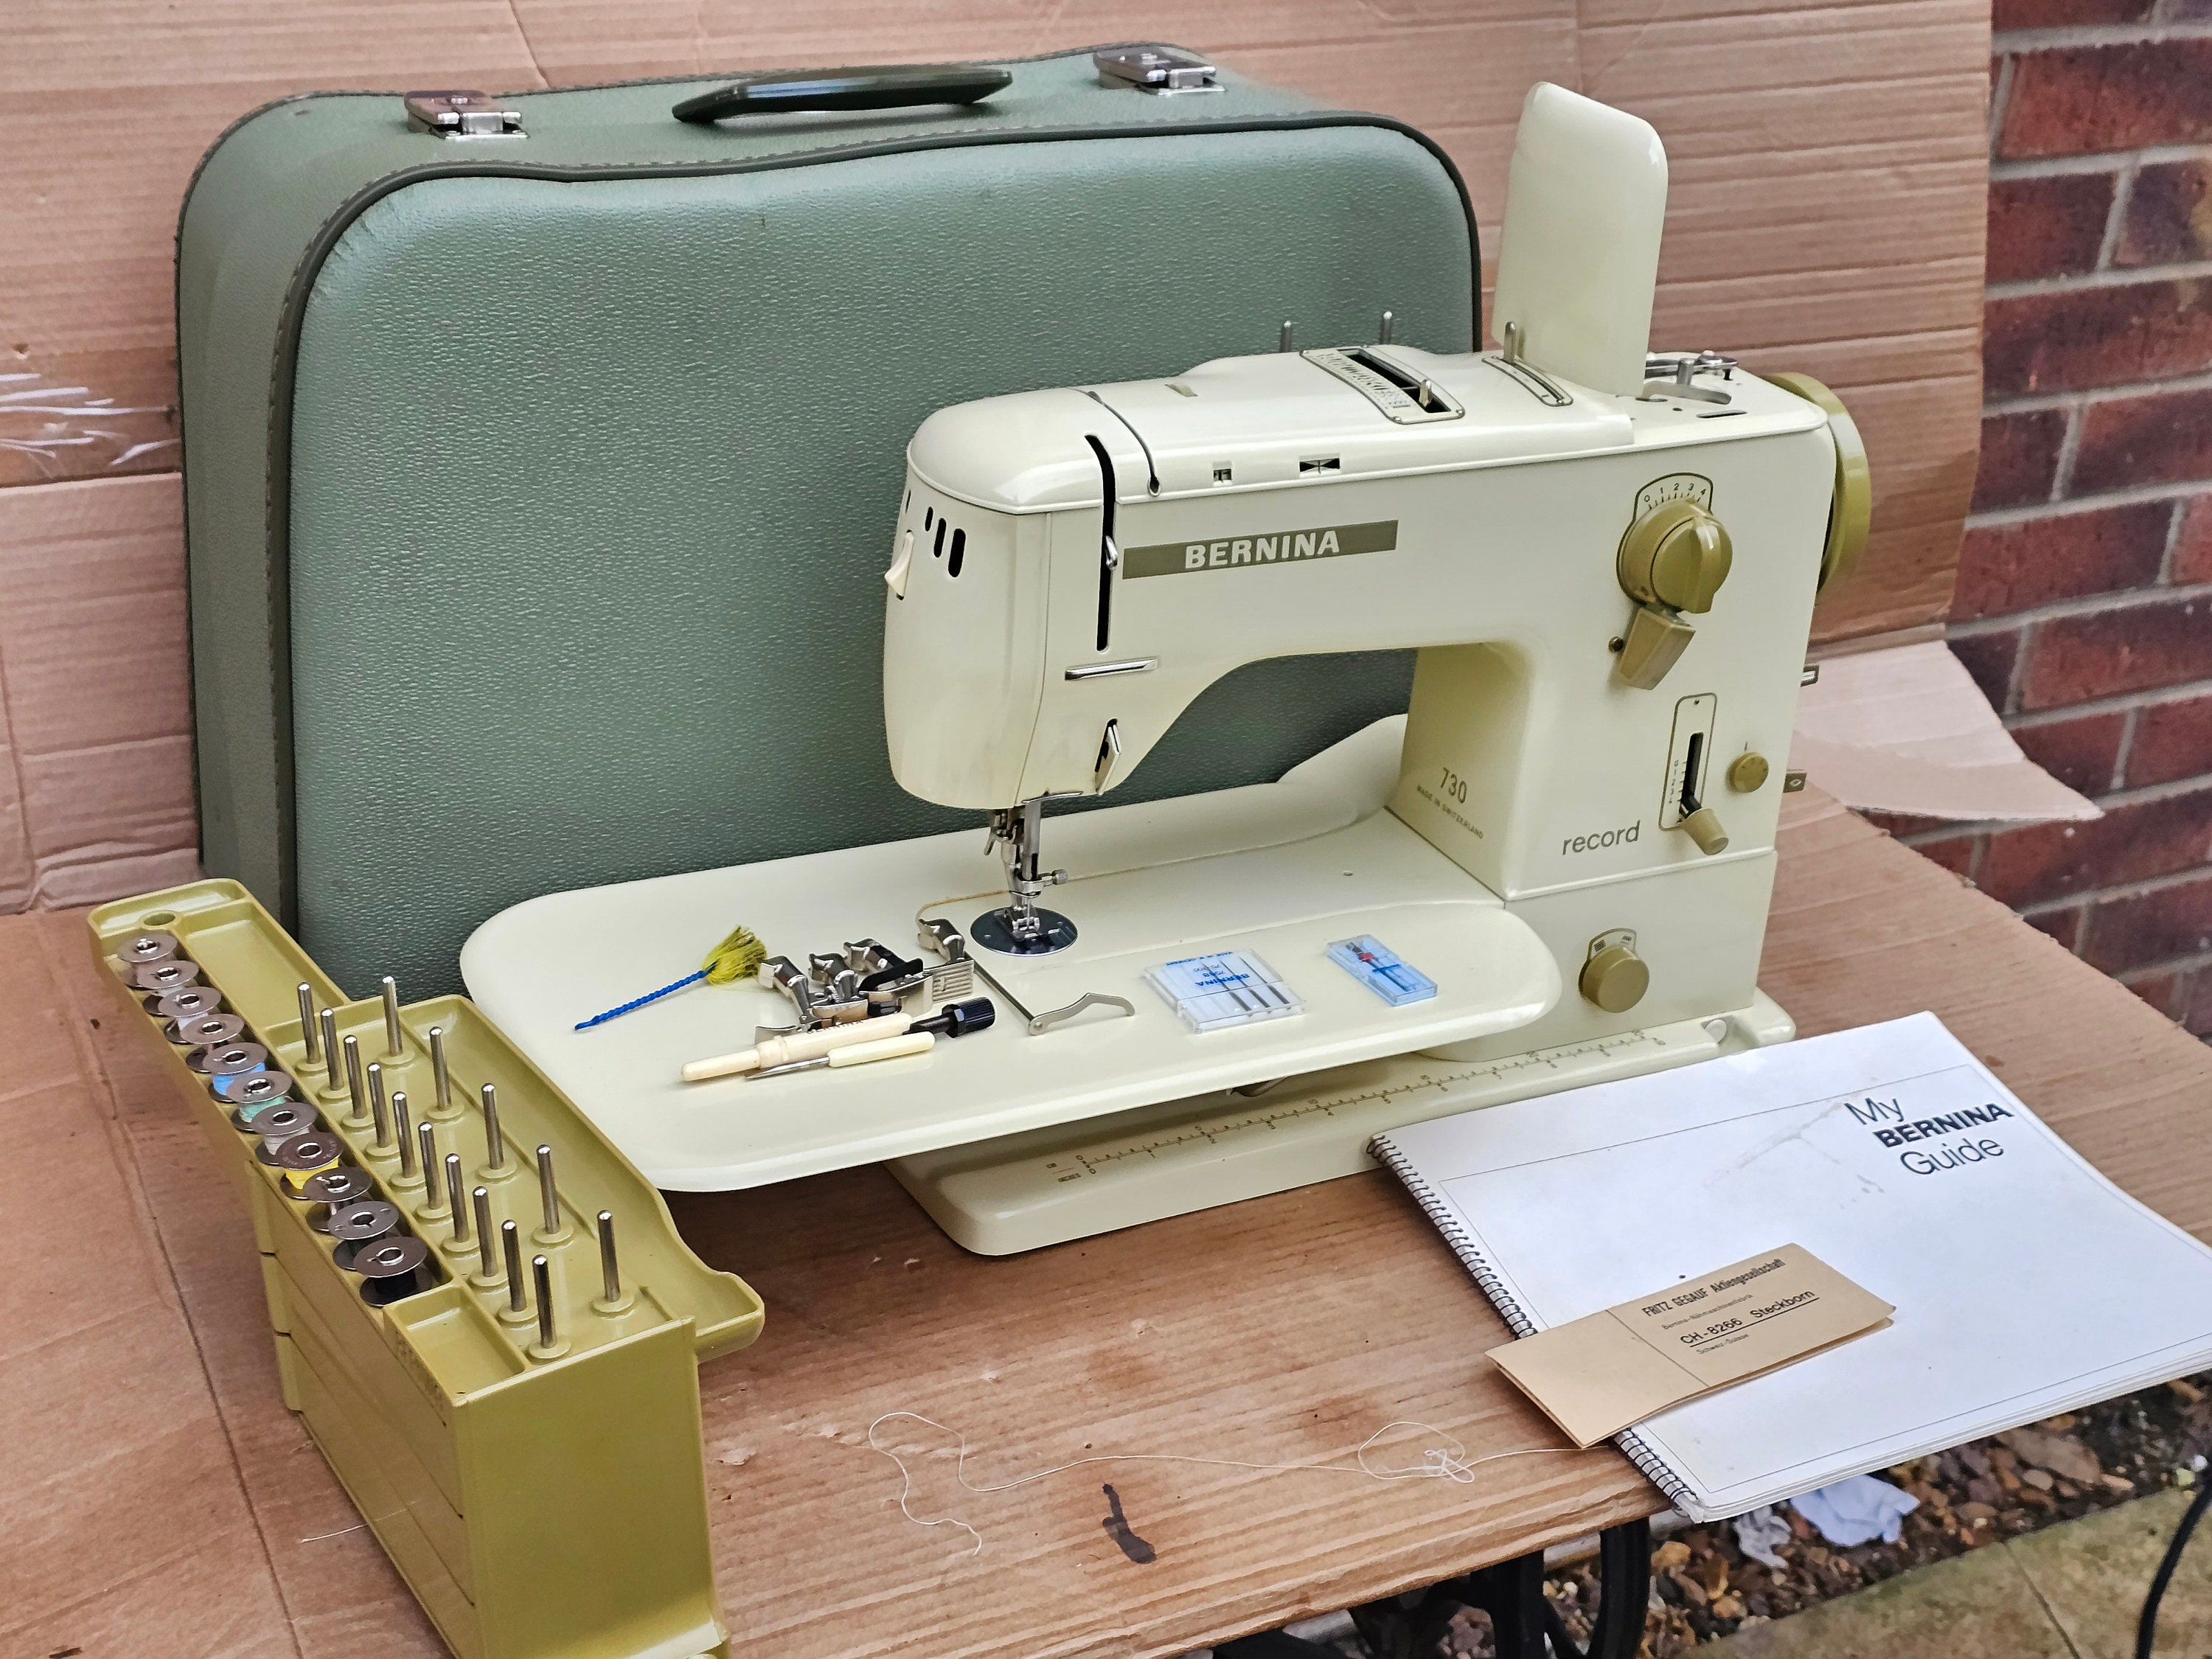 Mueble máquina de coser Refrey de segunda mano por 140 EUR en